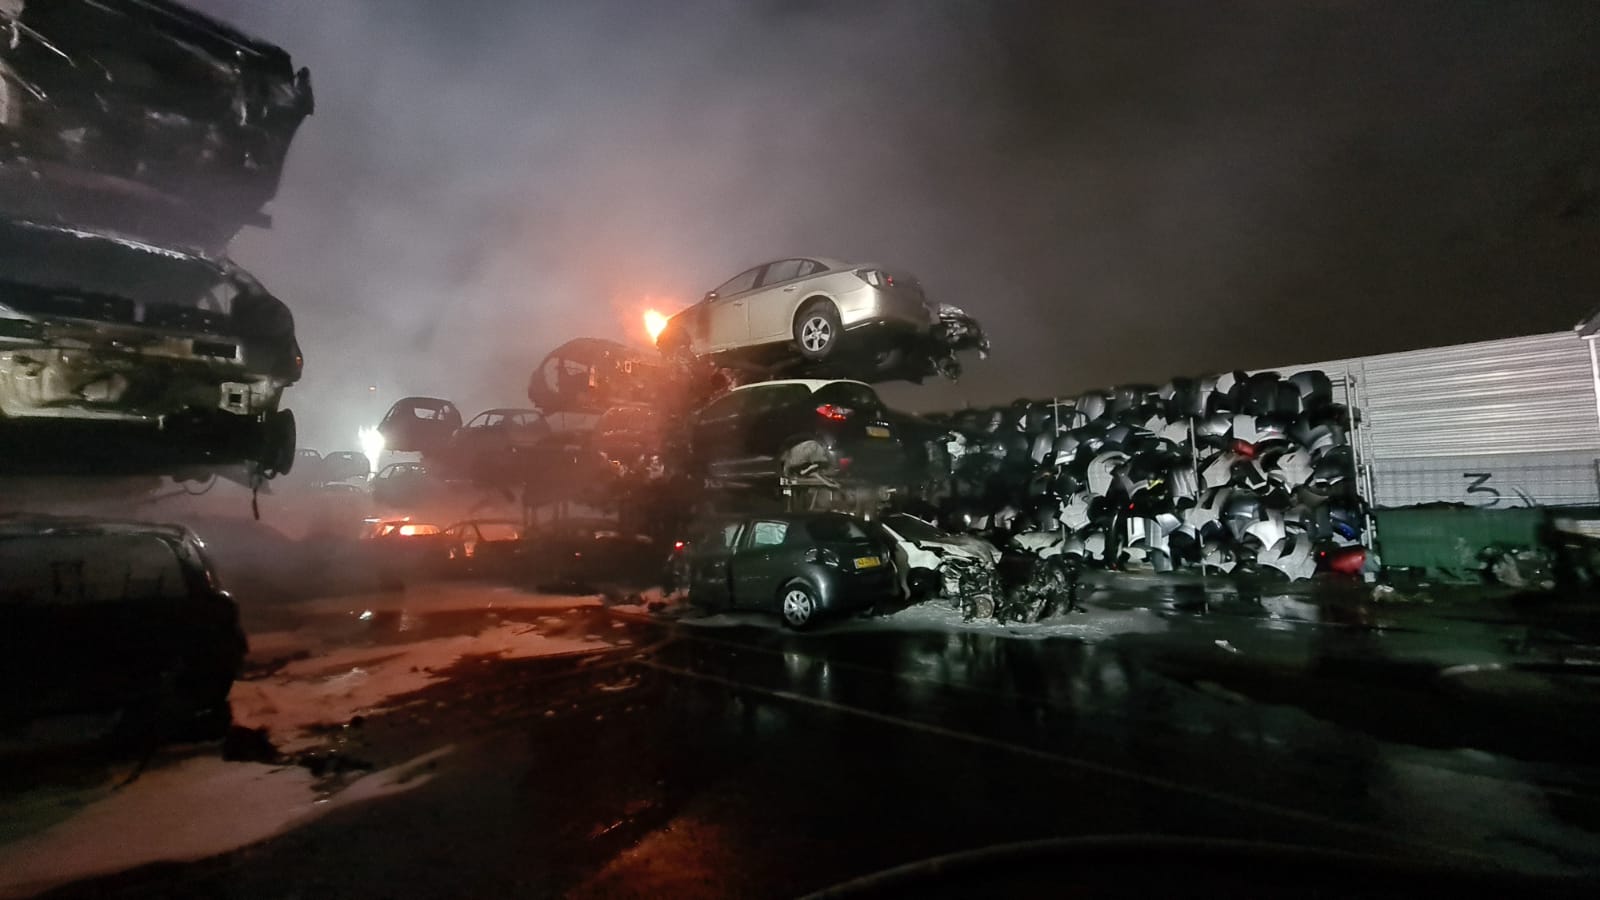  فيديو: حريق ضخم داخل مصف للسيارات في المنطقة الصناعية بمدينة اللد